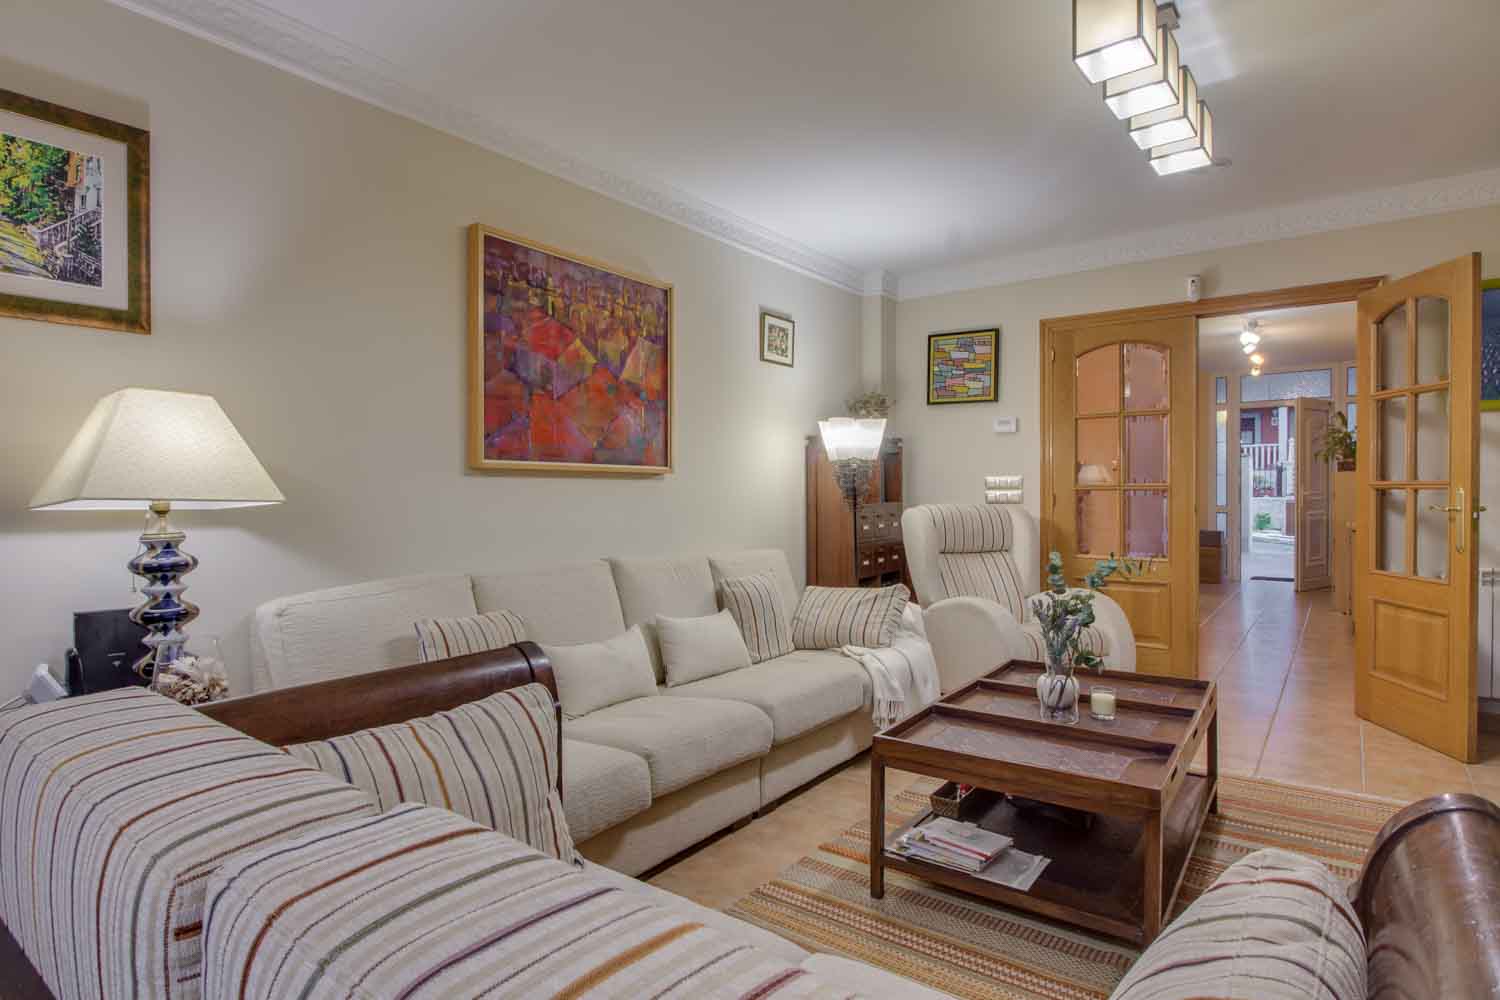 Detalle de sofás y butaca en color crema del salón